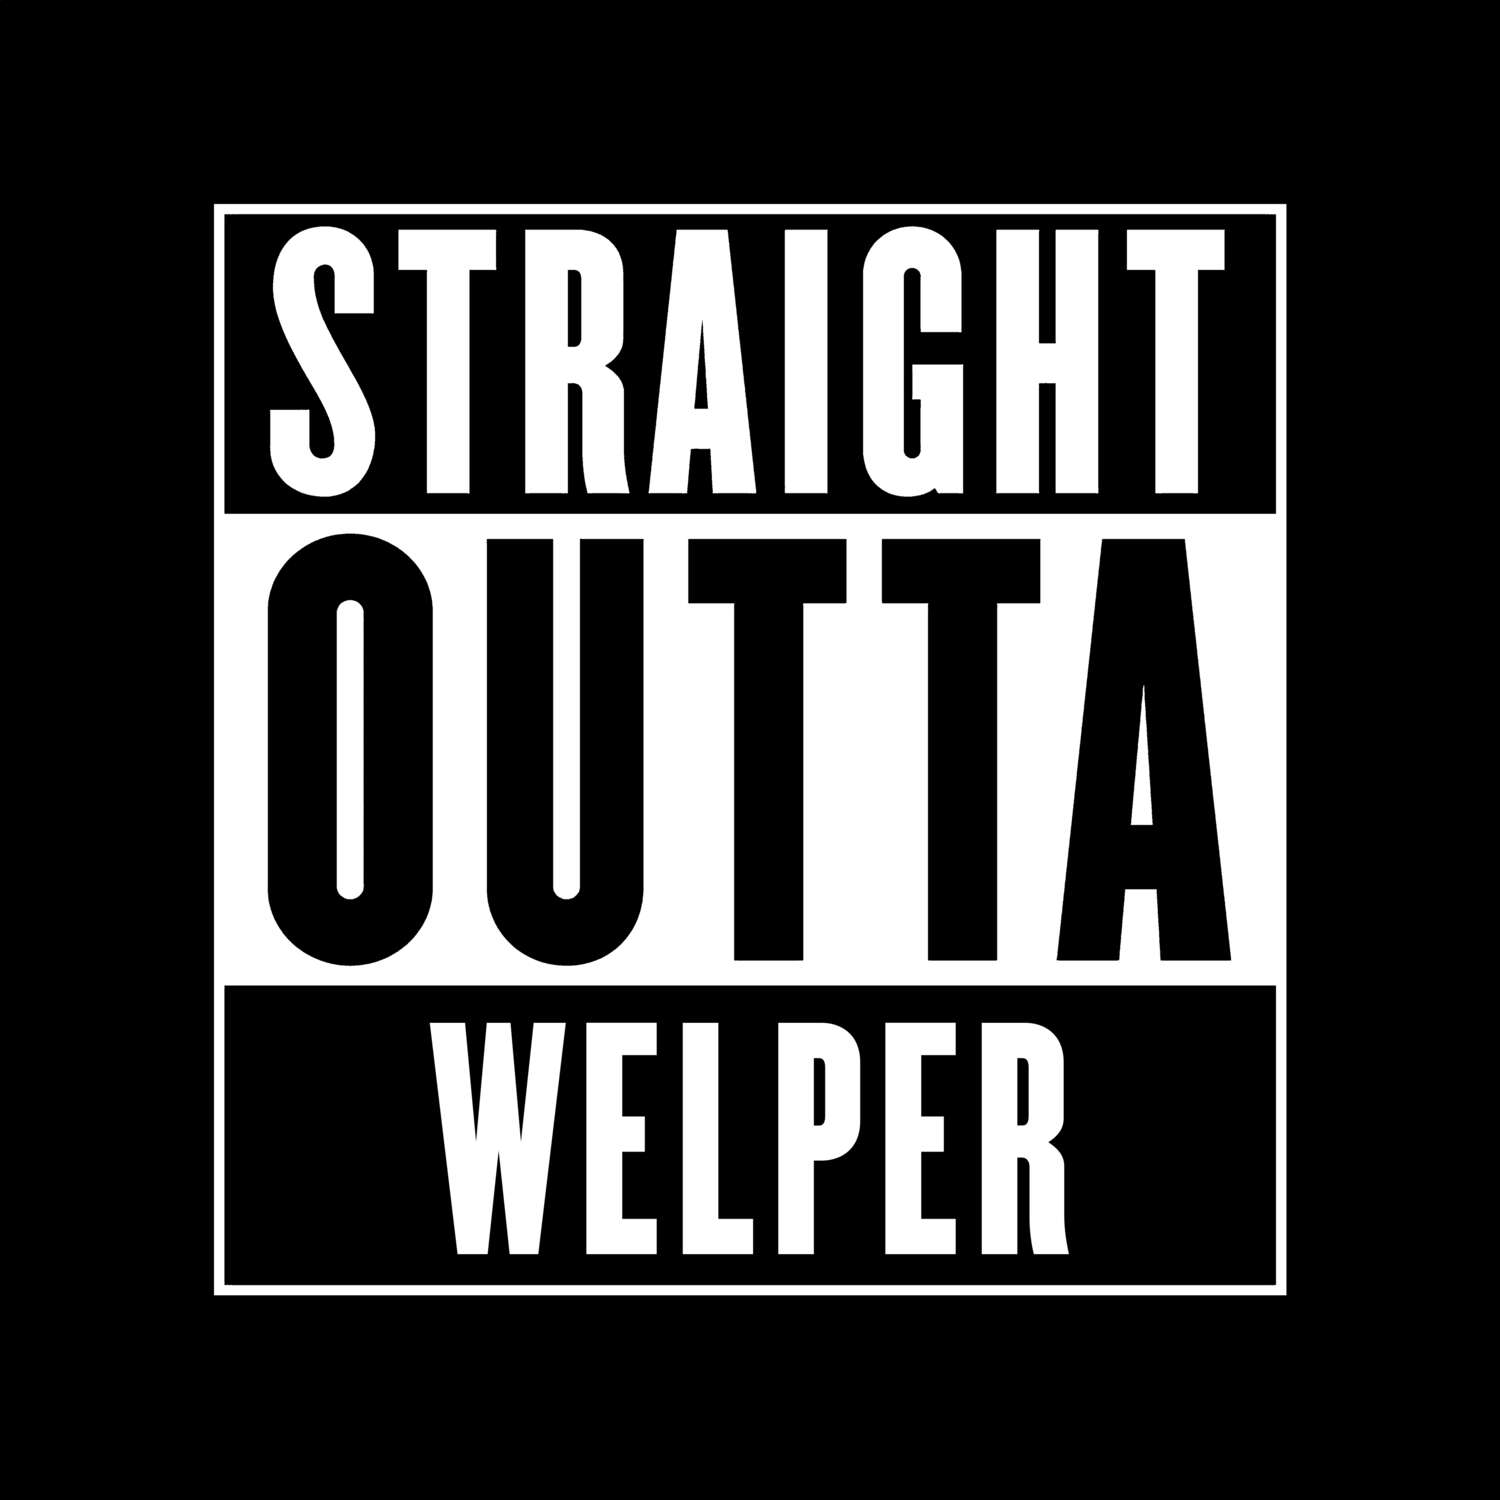 Welper T-Shirt »Straight Outta«